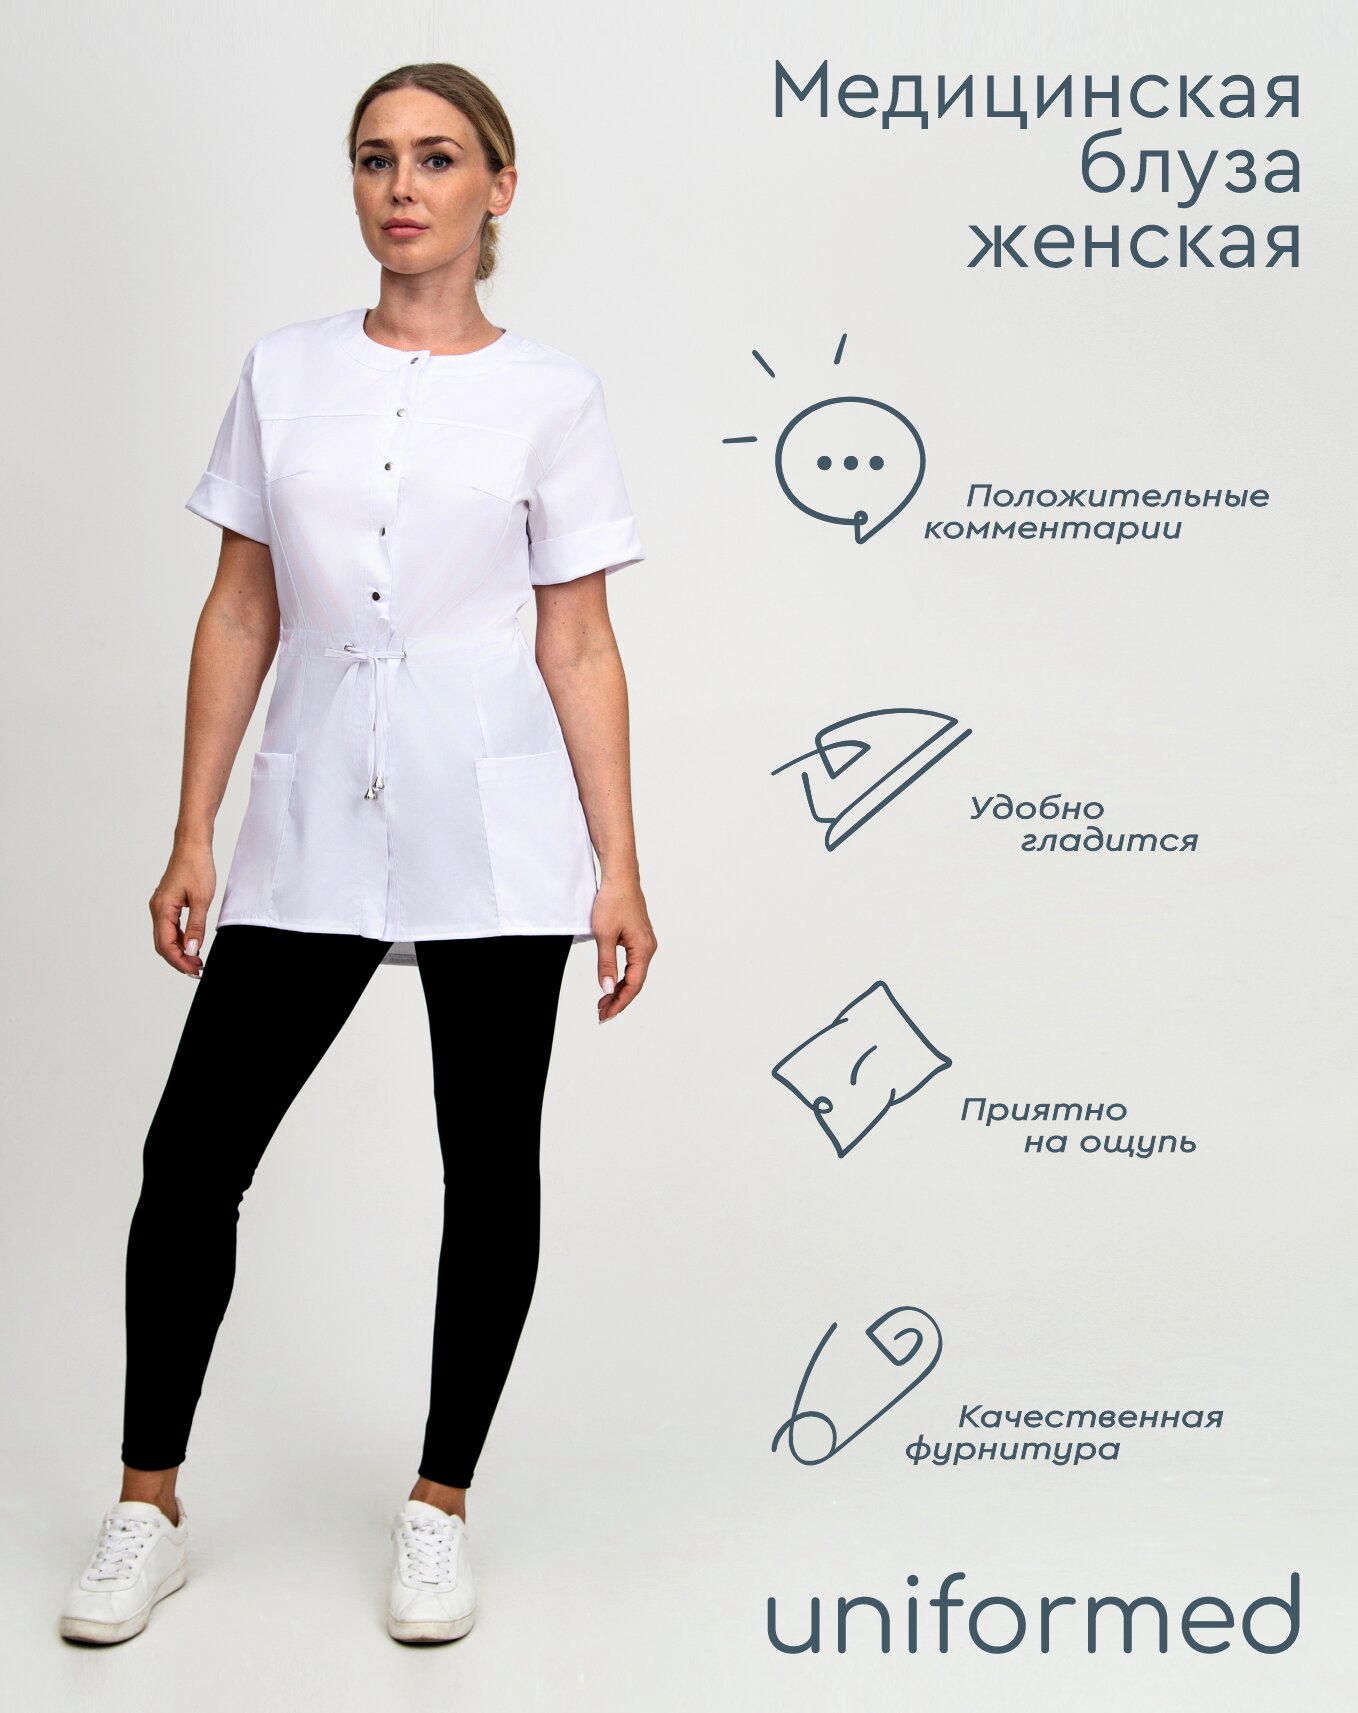 Медицинская женская блуза 404.4.6 Uniformed, ткань сатори стрейч, рукав короткий, цвет белый, рост 170-176, размер 44